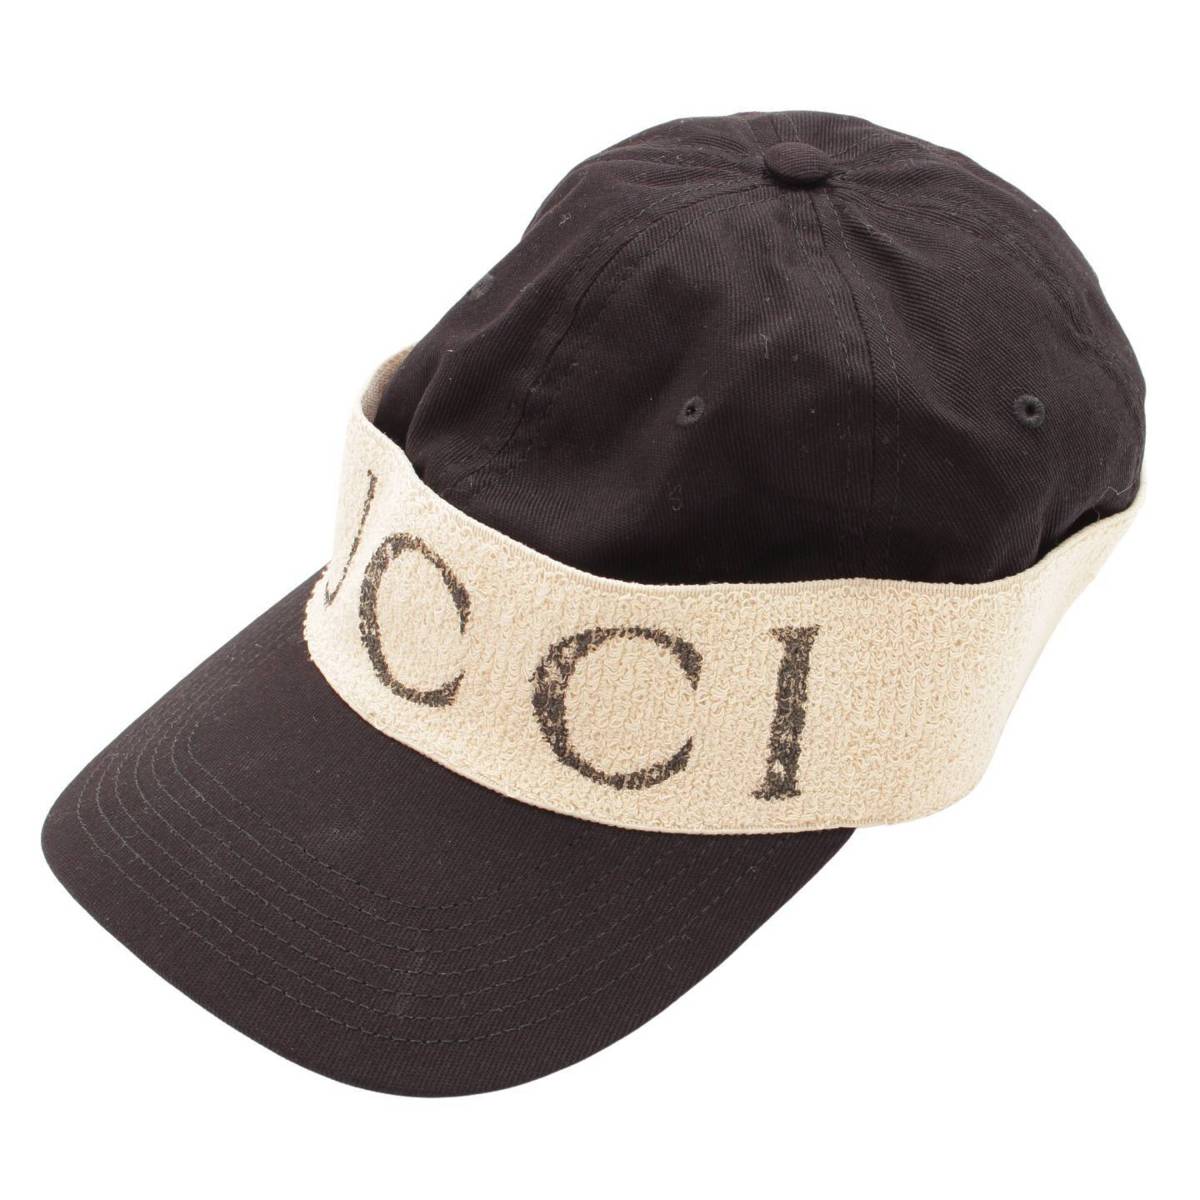 グッチ(Gucci) ヘアバンド付き ベースボール キャップ 帽子 ブラック XL 60